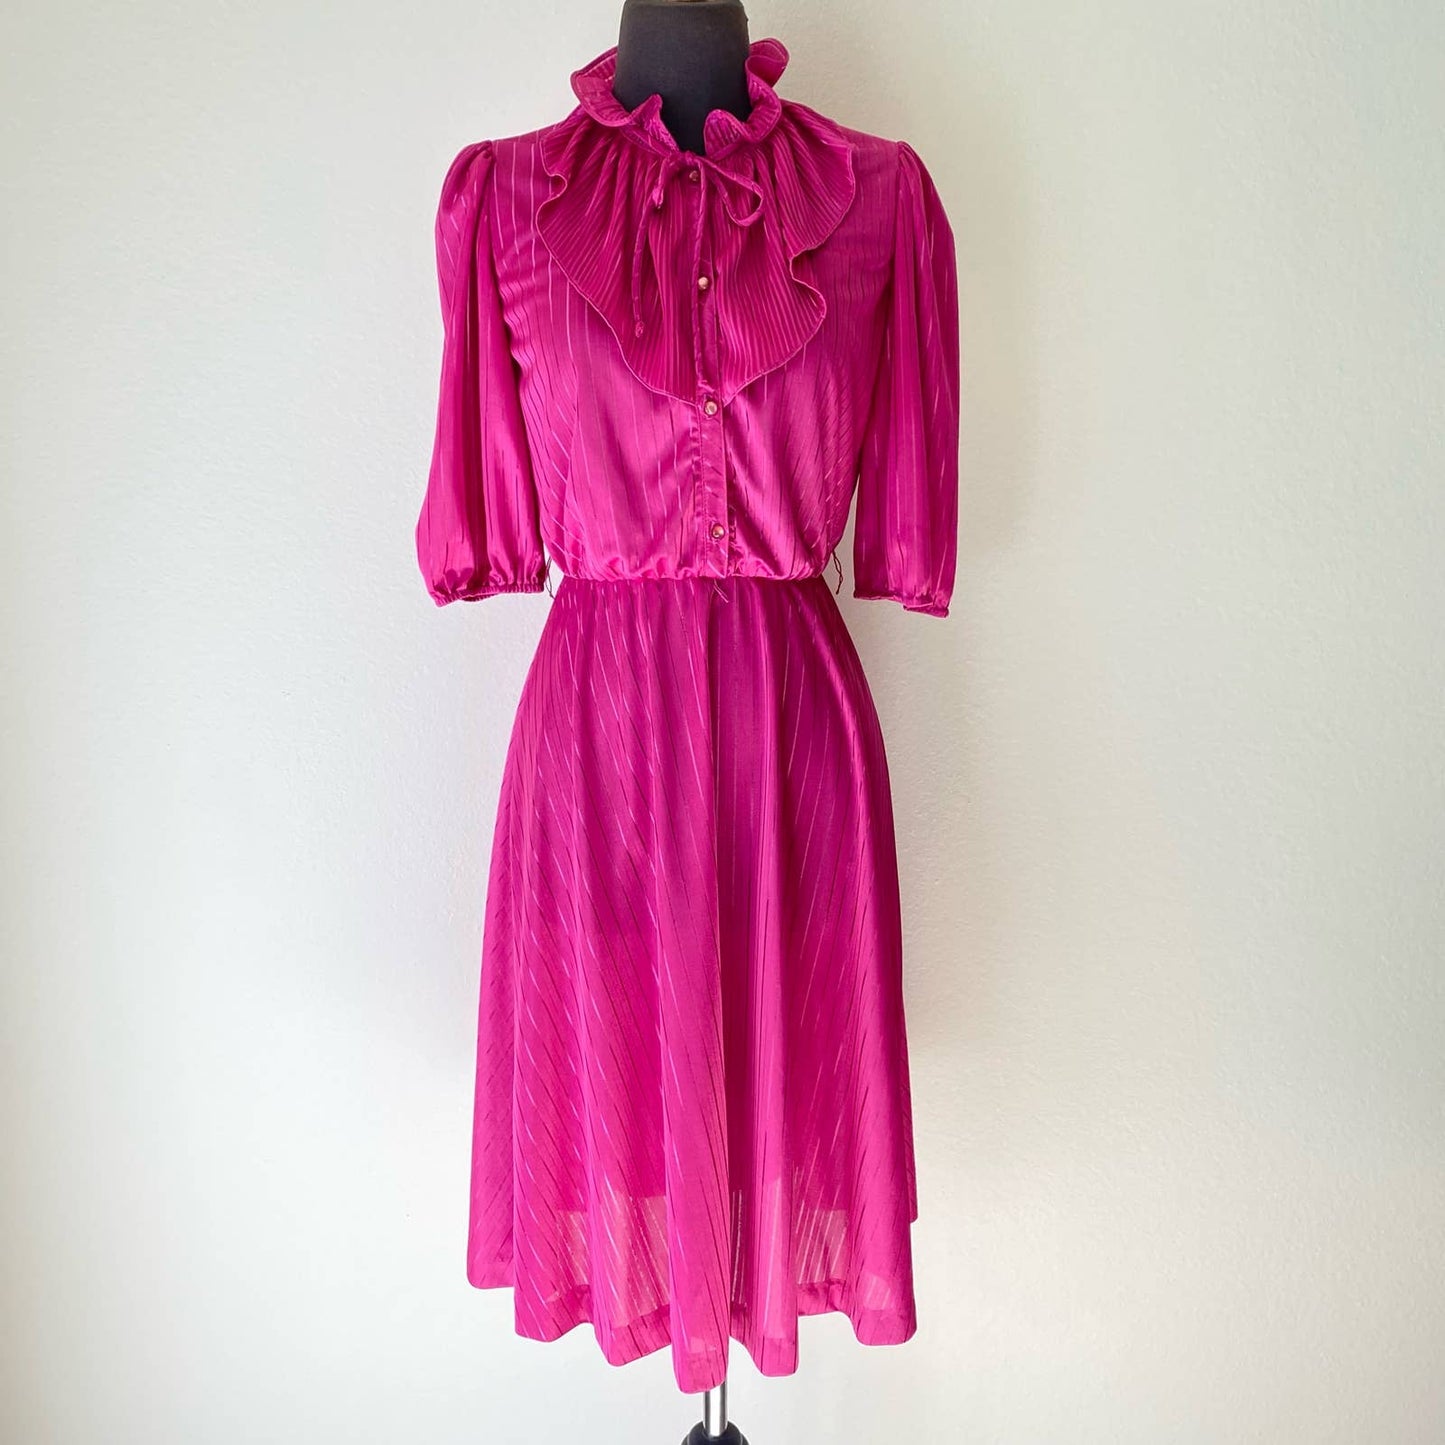 Promises Petites sz 10 victorian neck A-line Vintage dress